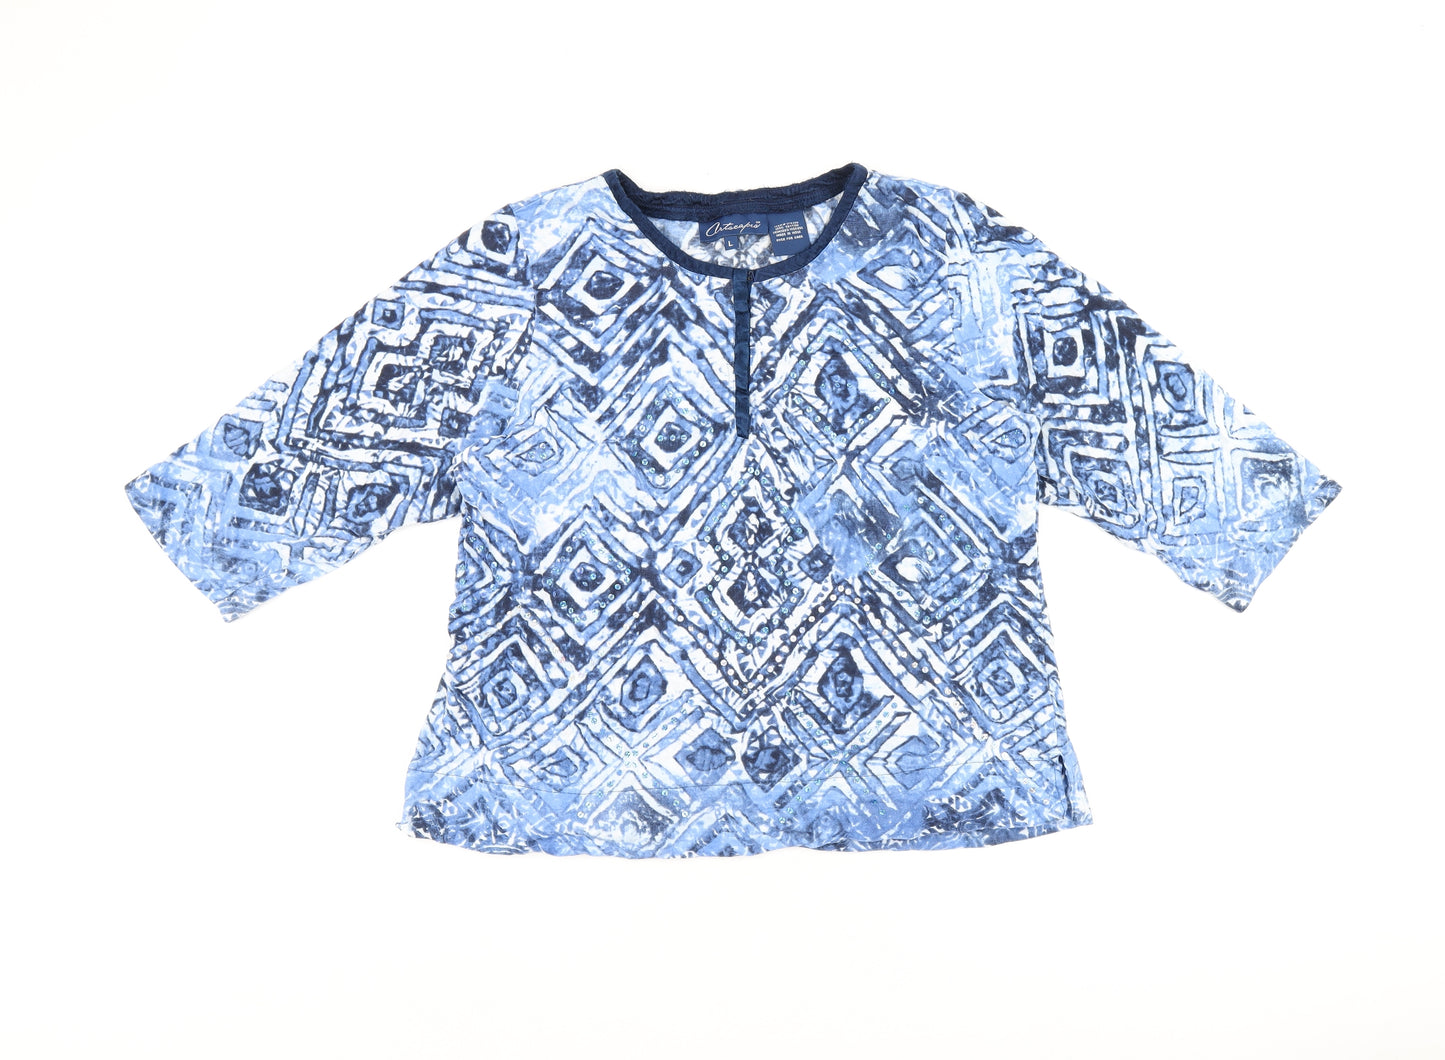 Artacapea Womens Blue Geometric Cotton Basic Blouse Size L Round Neck - Sequins